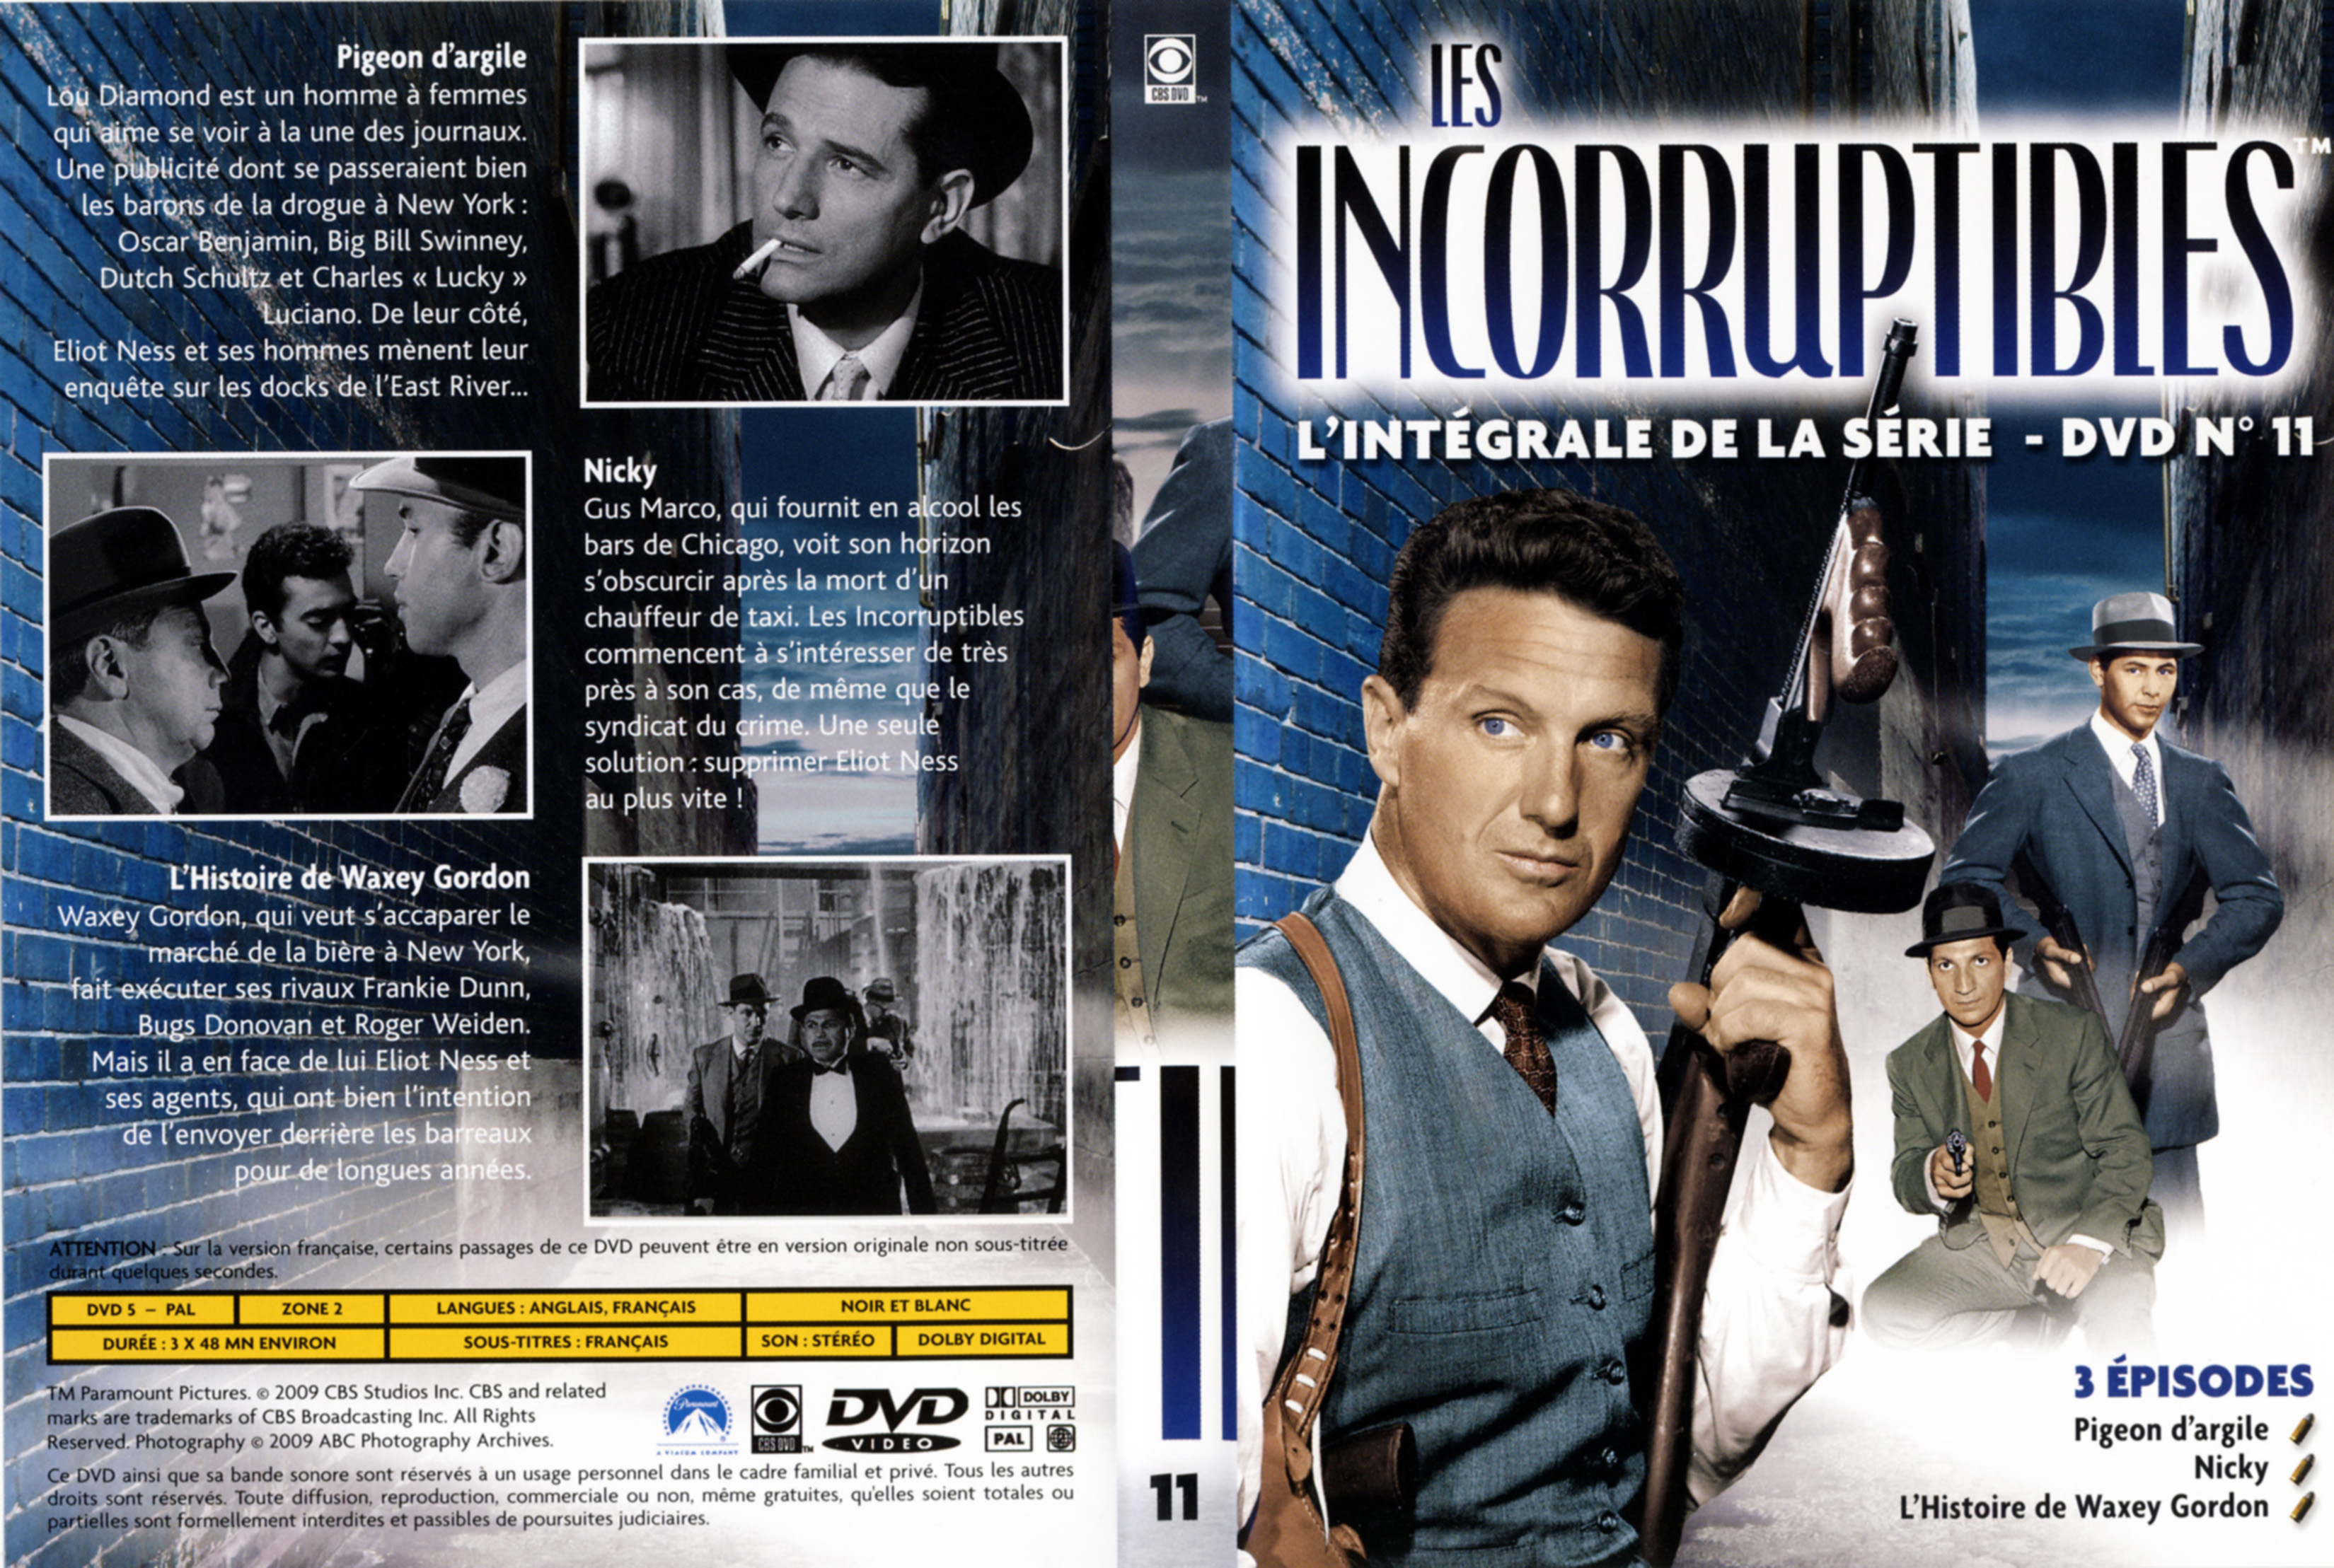 Jaquette DVD Les incorruptibles intgrale DVD 11